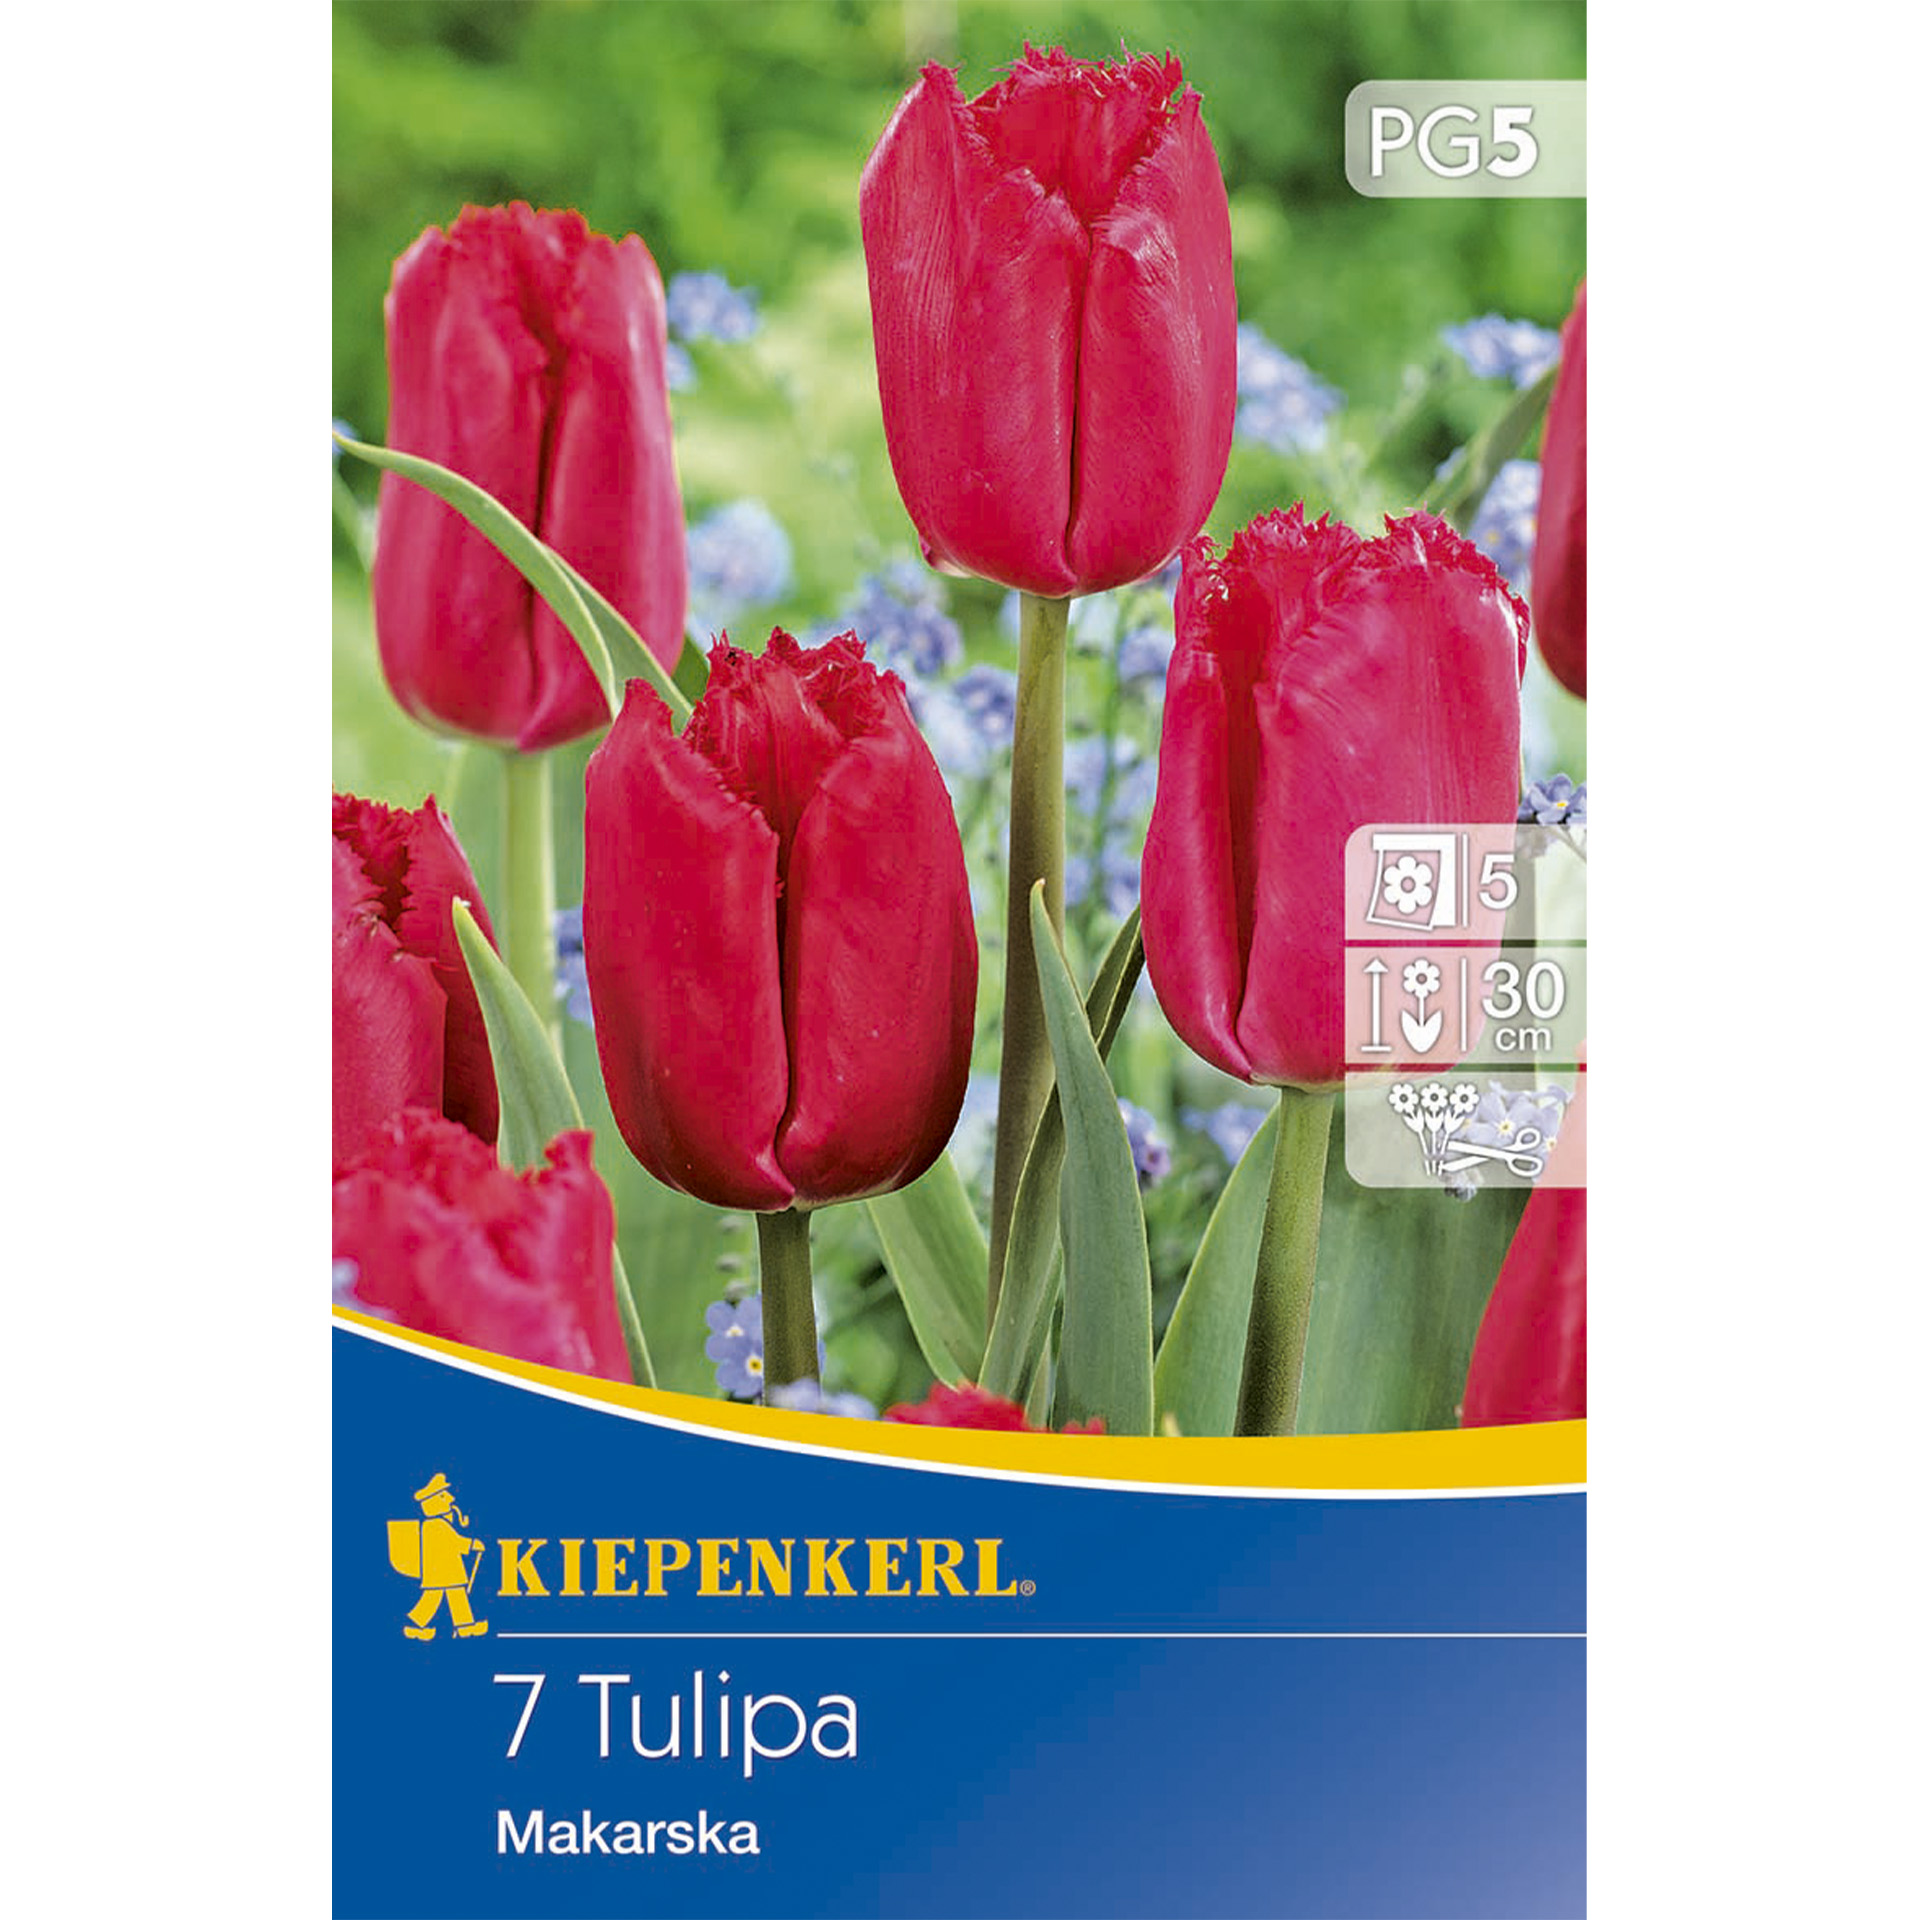 Tulpen mit leuchtend rosa-roten, gefransten Blütenblättern